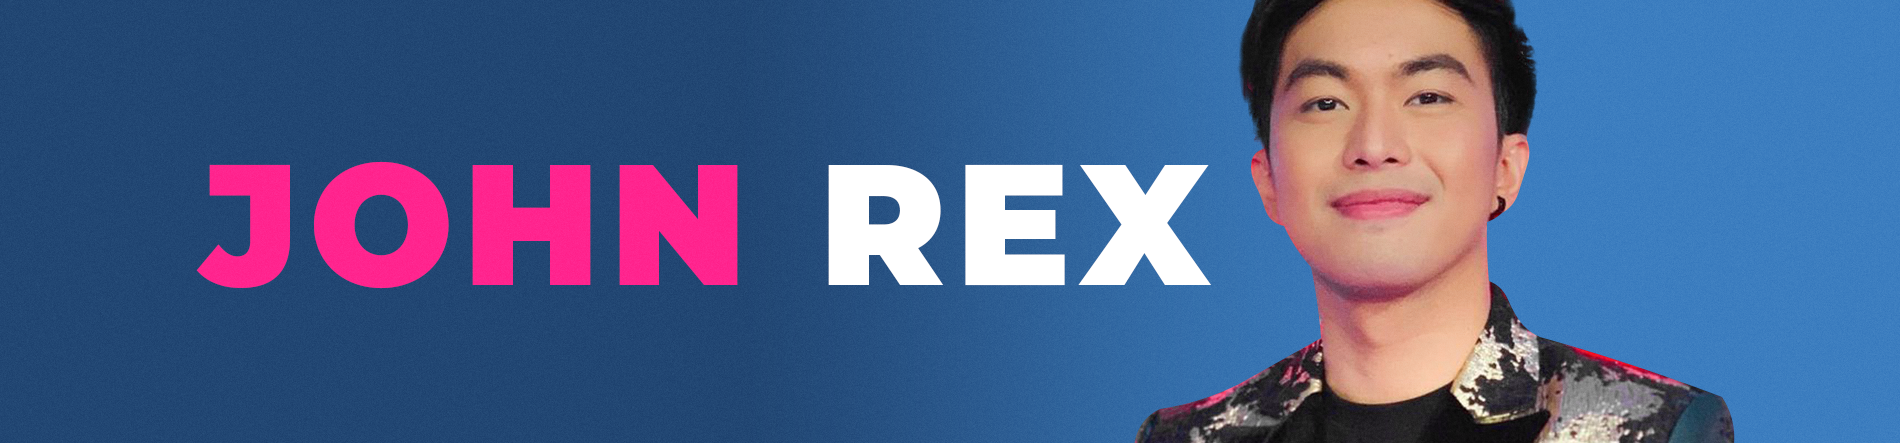 Rex Desktop